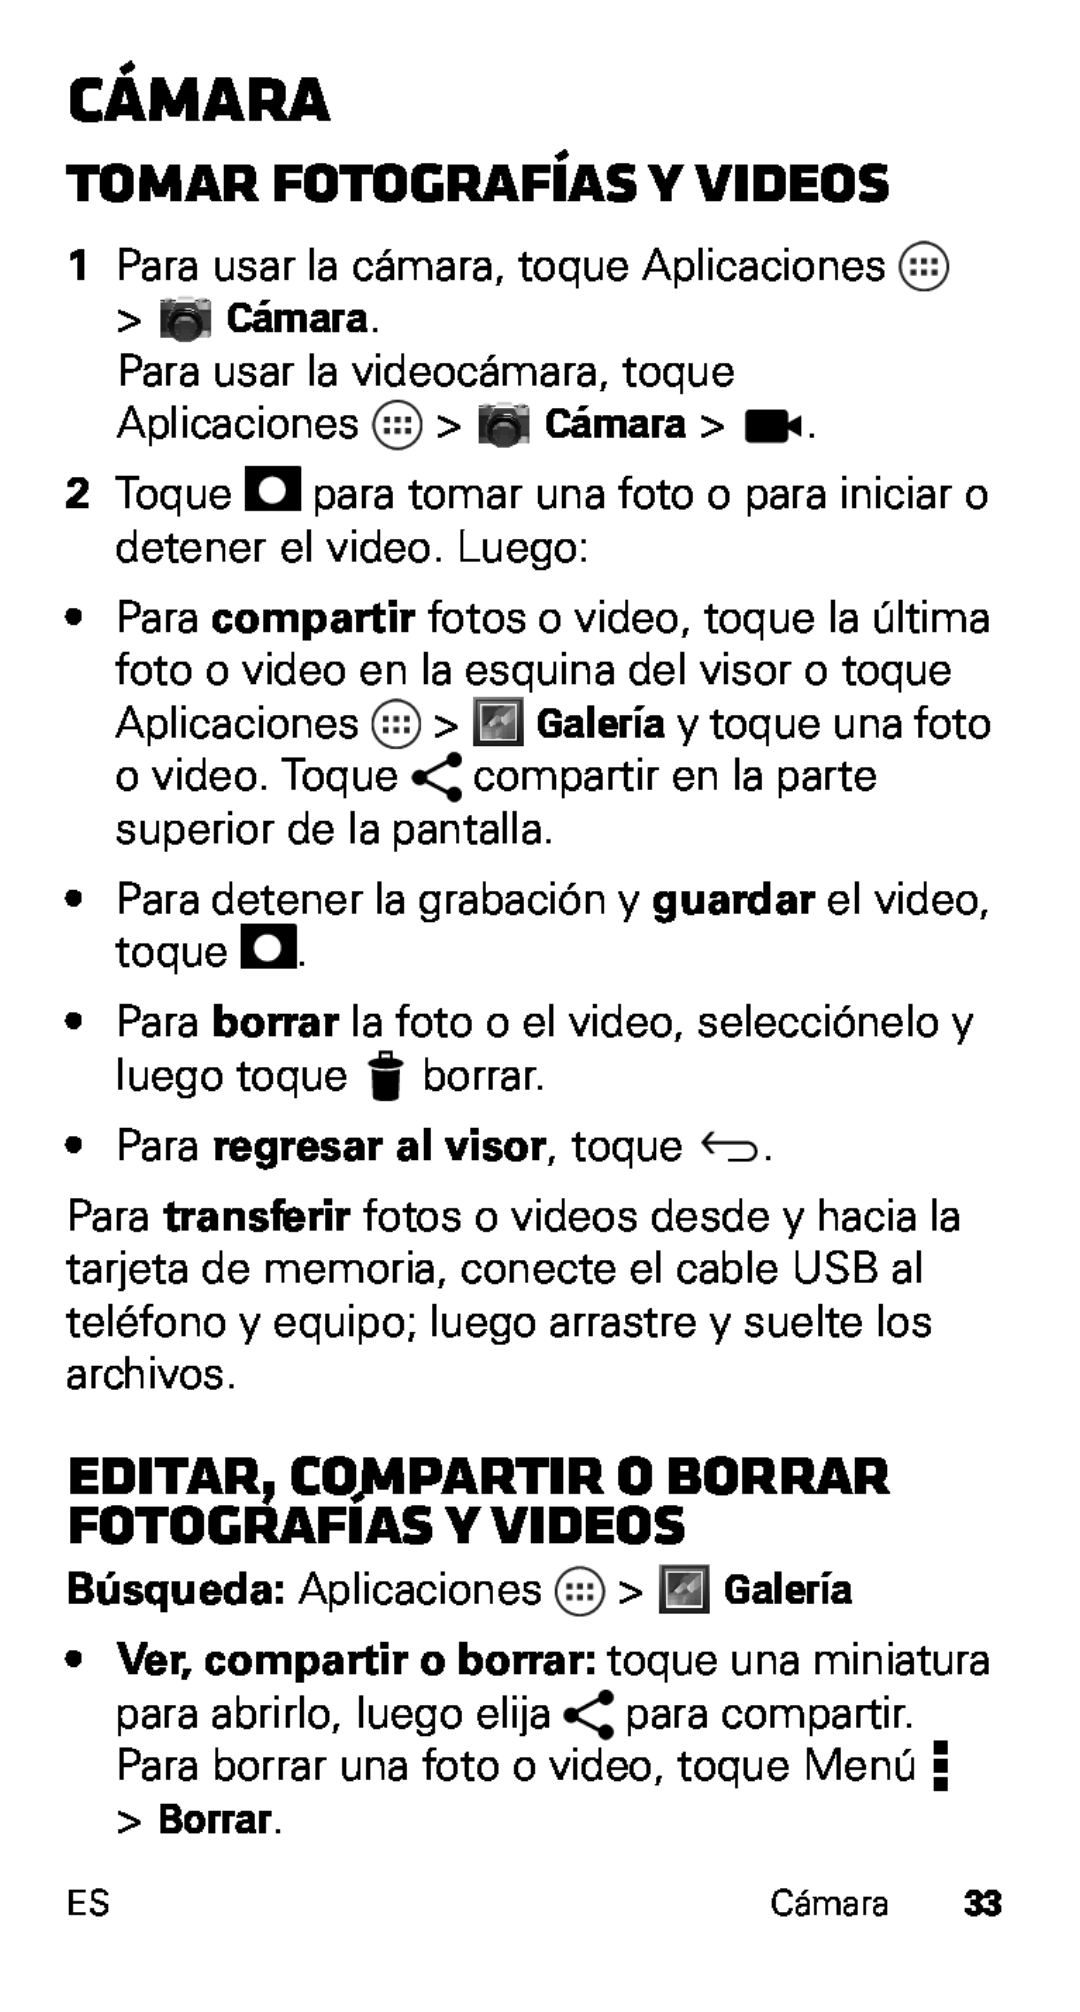 Motorola D1, XT915 manual Cámara, Tomar fotografías y videos, Editar, compartir o borrar fotografías y videos 